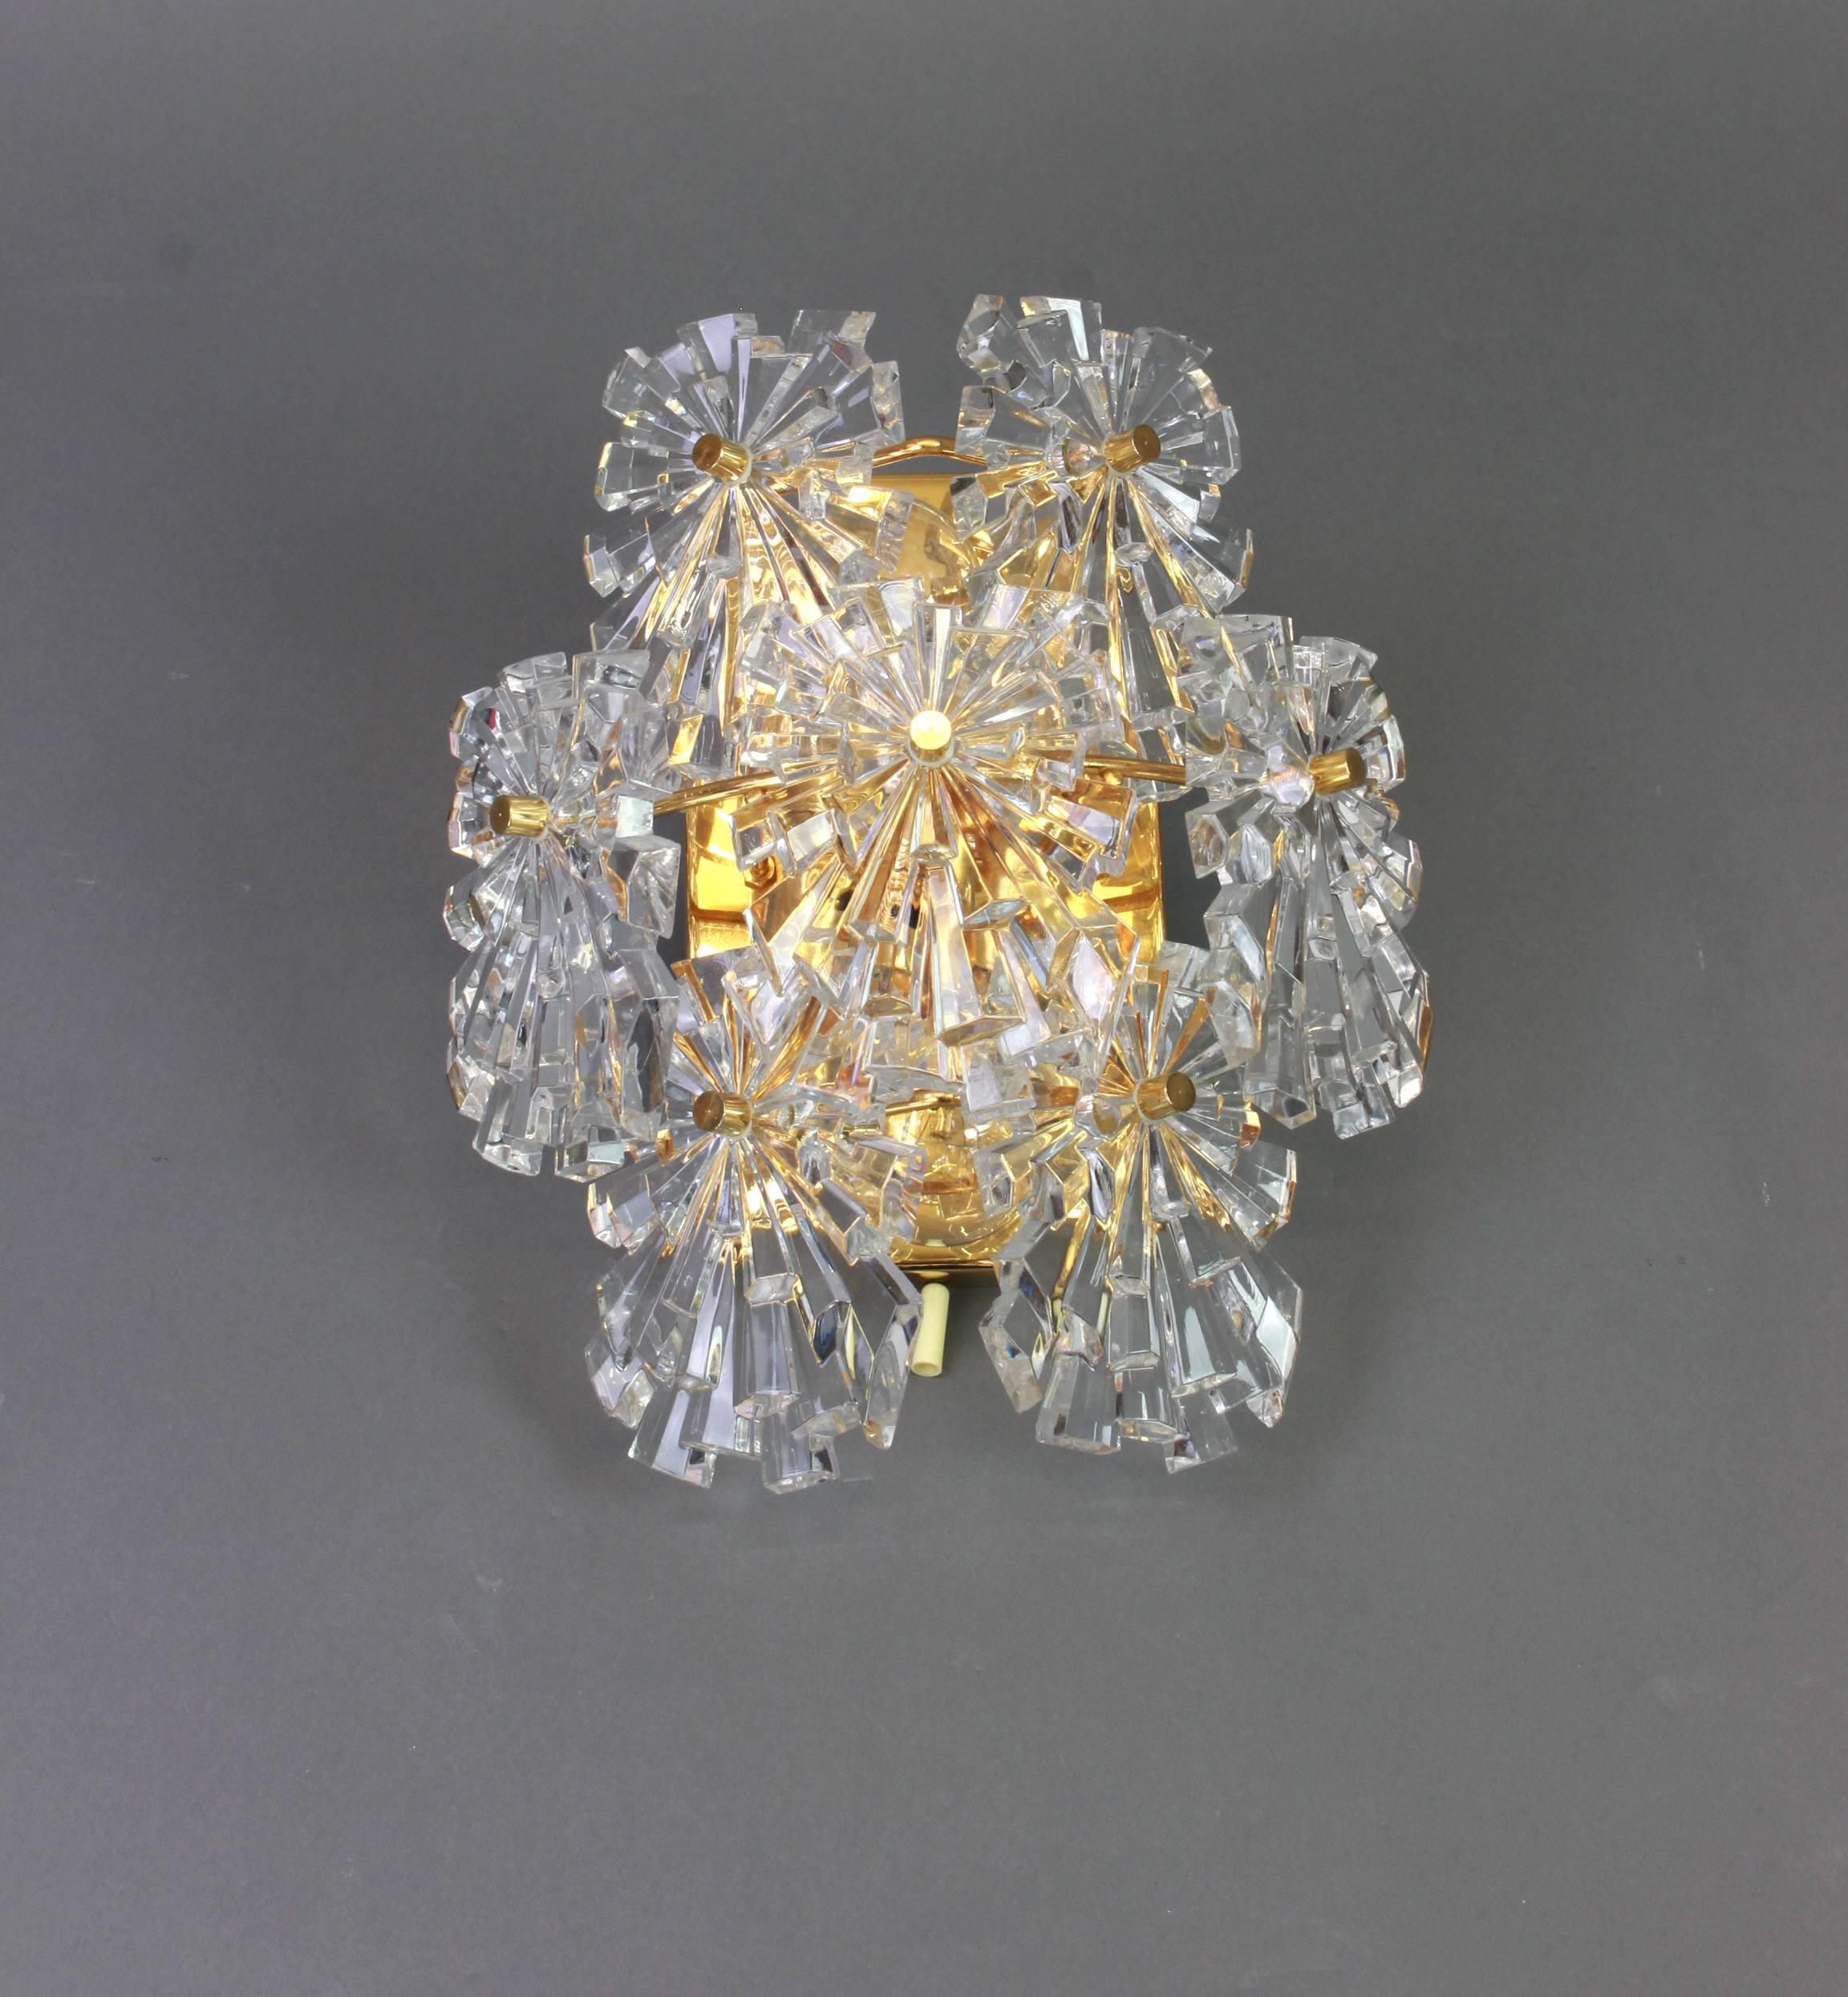 Ein wunderschönes Paar goldener Wandleuchter mit Kristallgläsern, hergestellt von Kinkeldey, Deutschland, ca. 1970-1979. Es besteht aus Murano-Kristalltropfen auf einem vergoldeten Messingrahmen.

Das Beste aus den 1970er Jahren aus